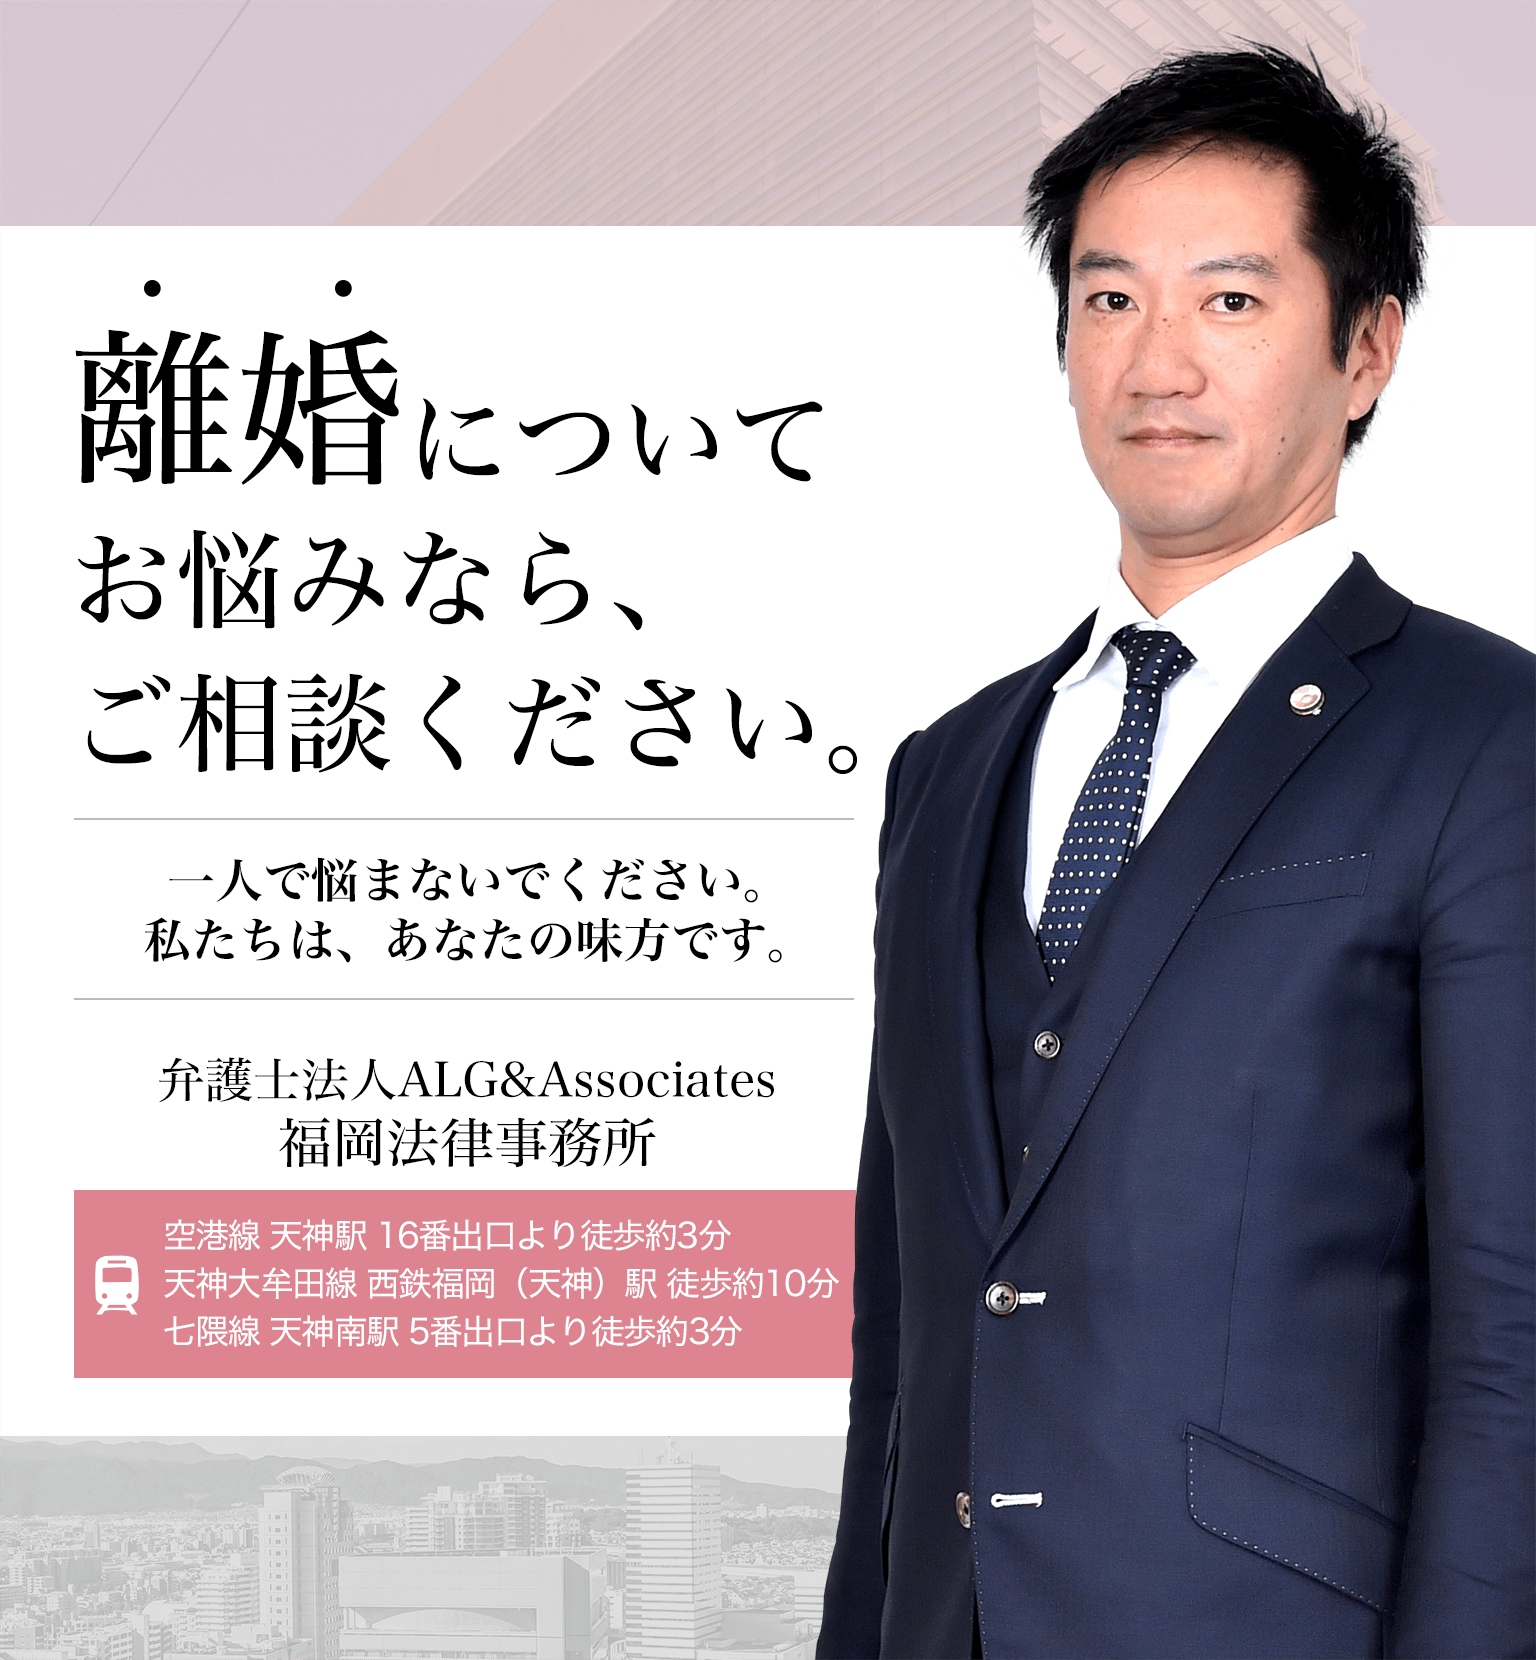 福岡の弁護士による離婚無料相談 弁護士法人alg Associates 福岡法律事務所